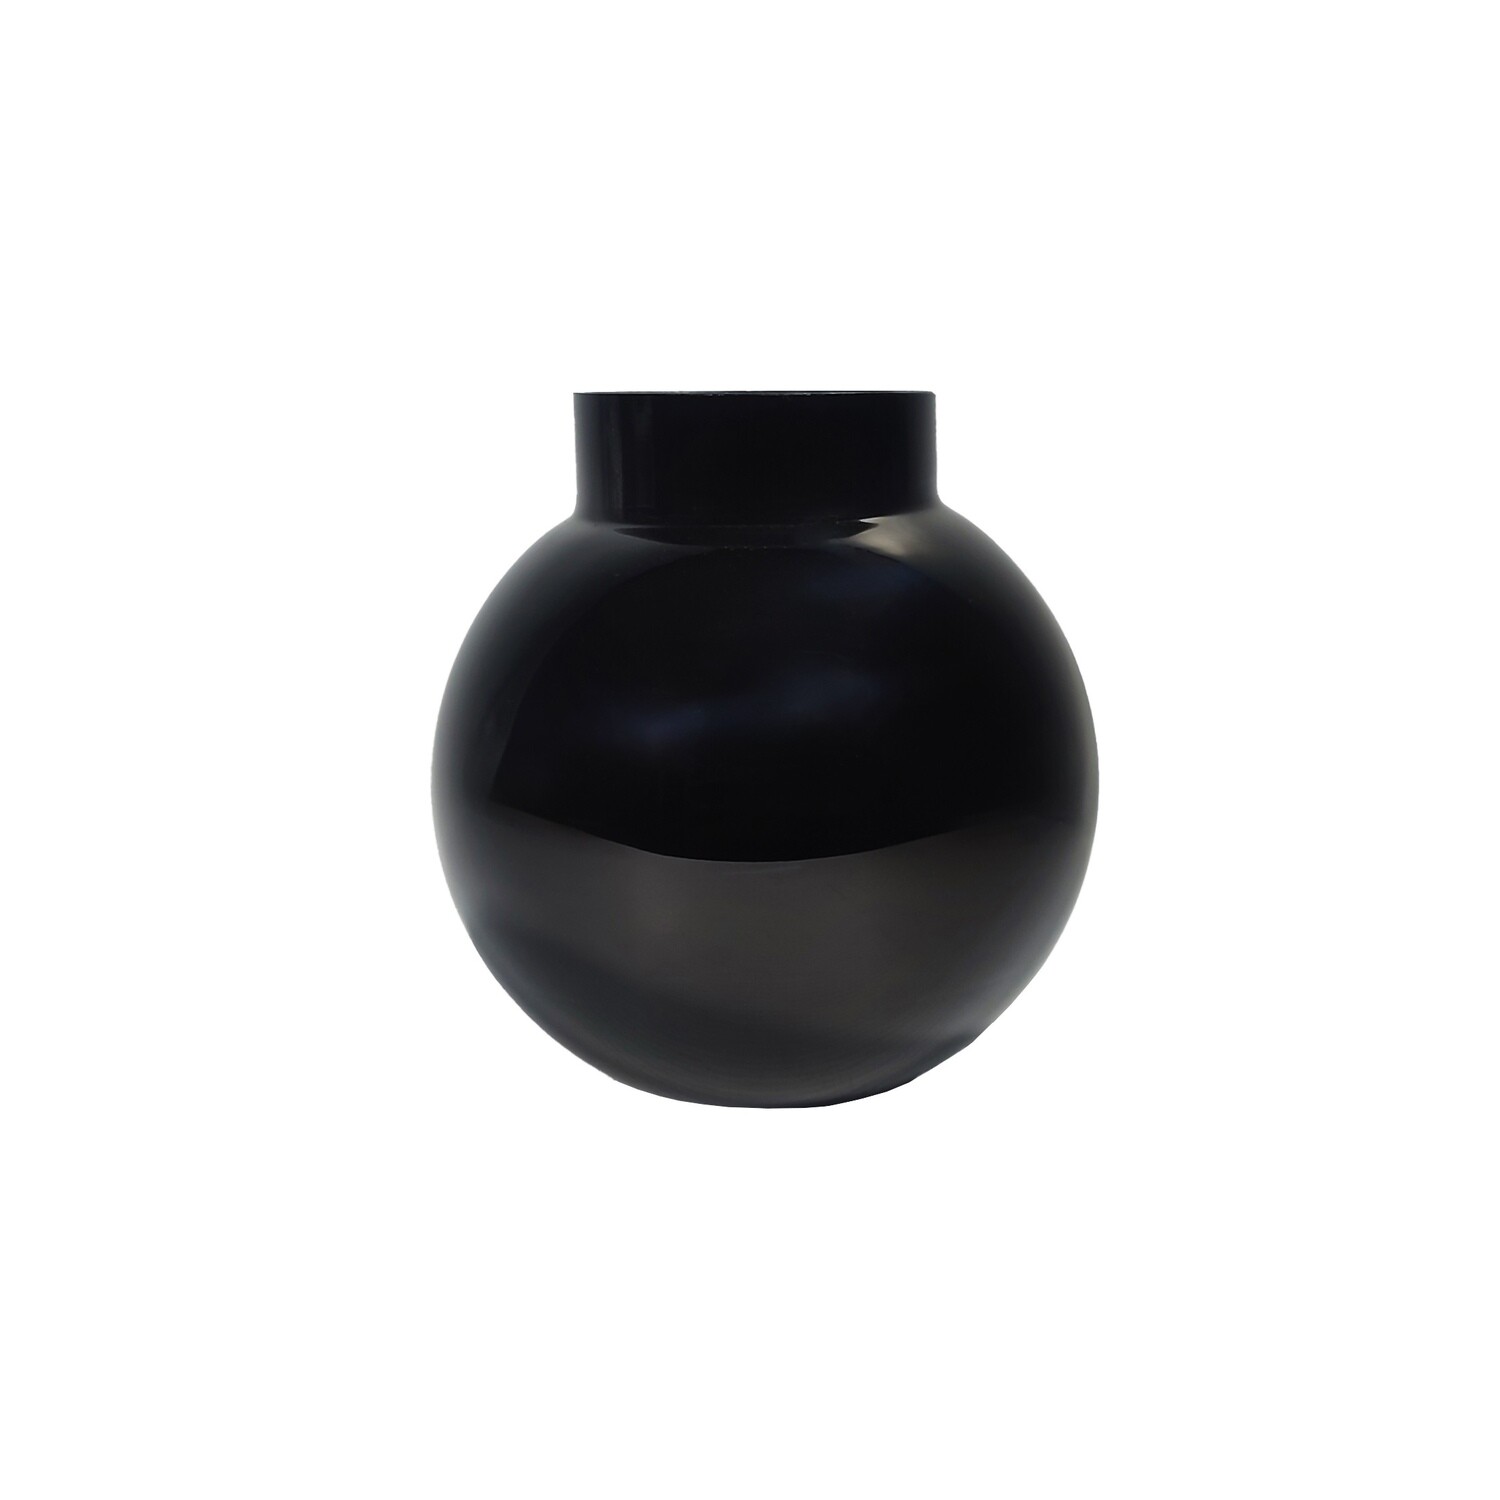 Vase Round Black - Shiny- 19cm